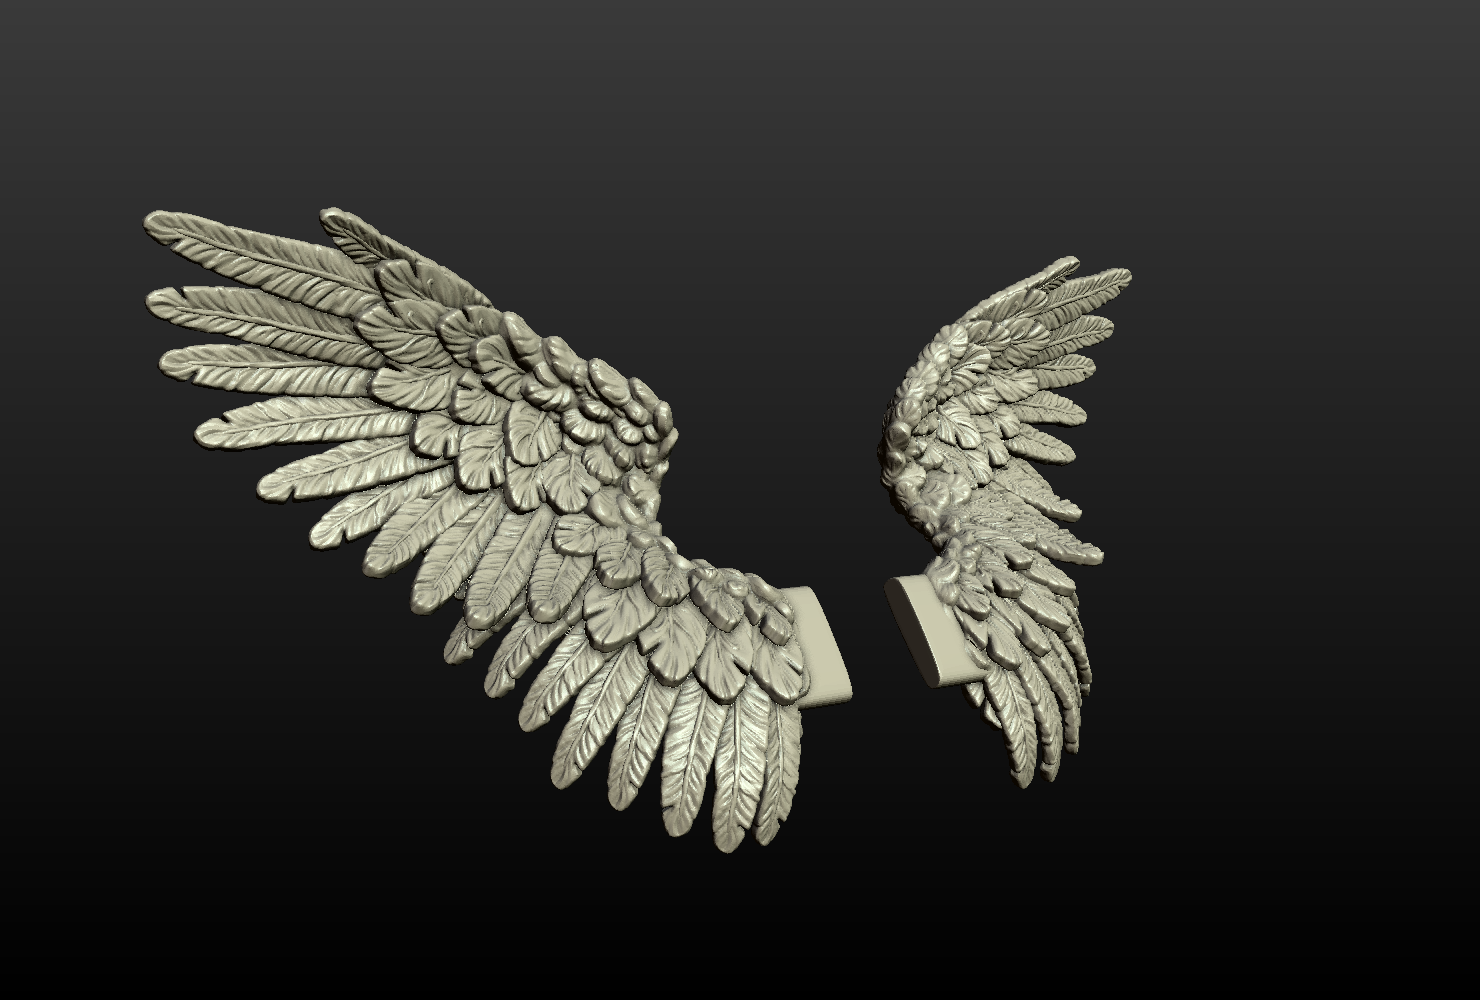 wings 3d model free